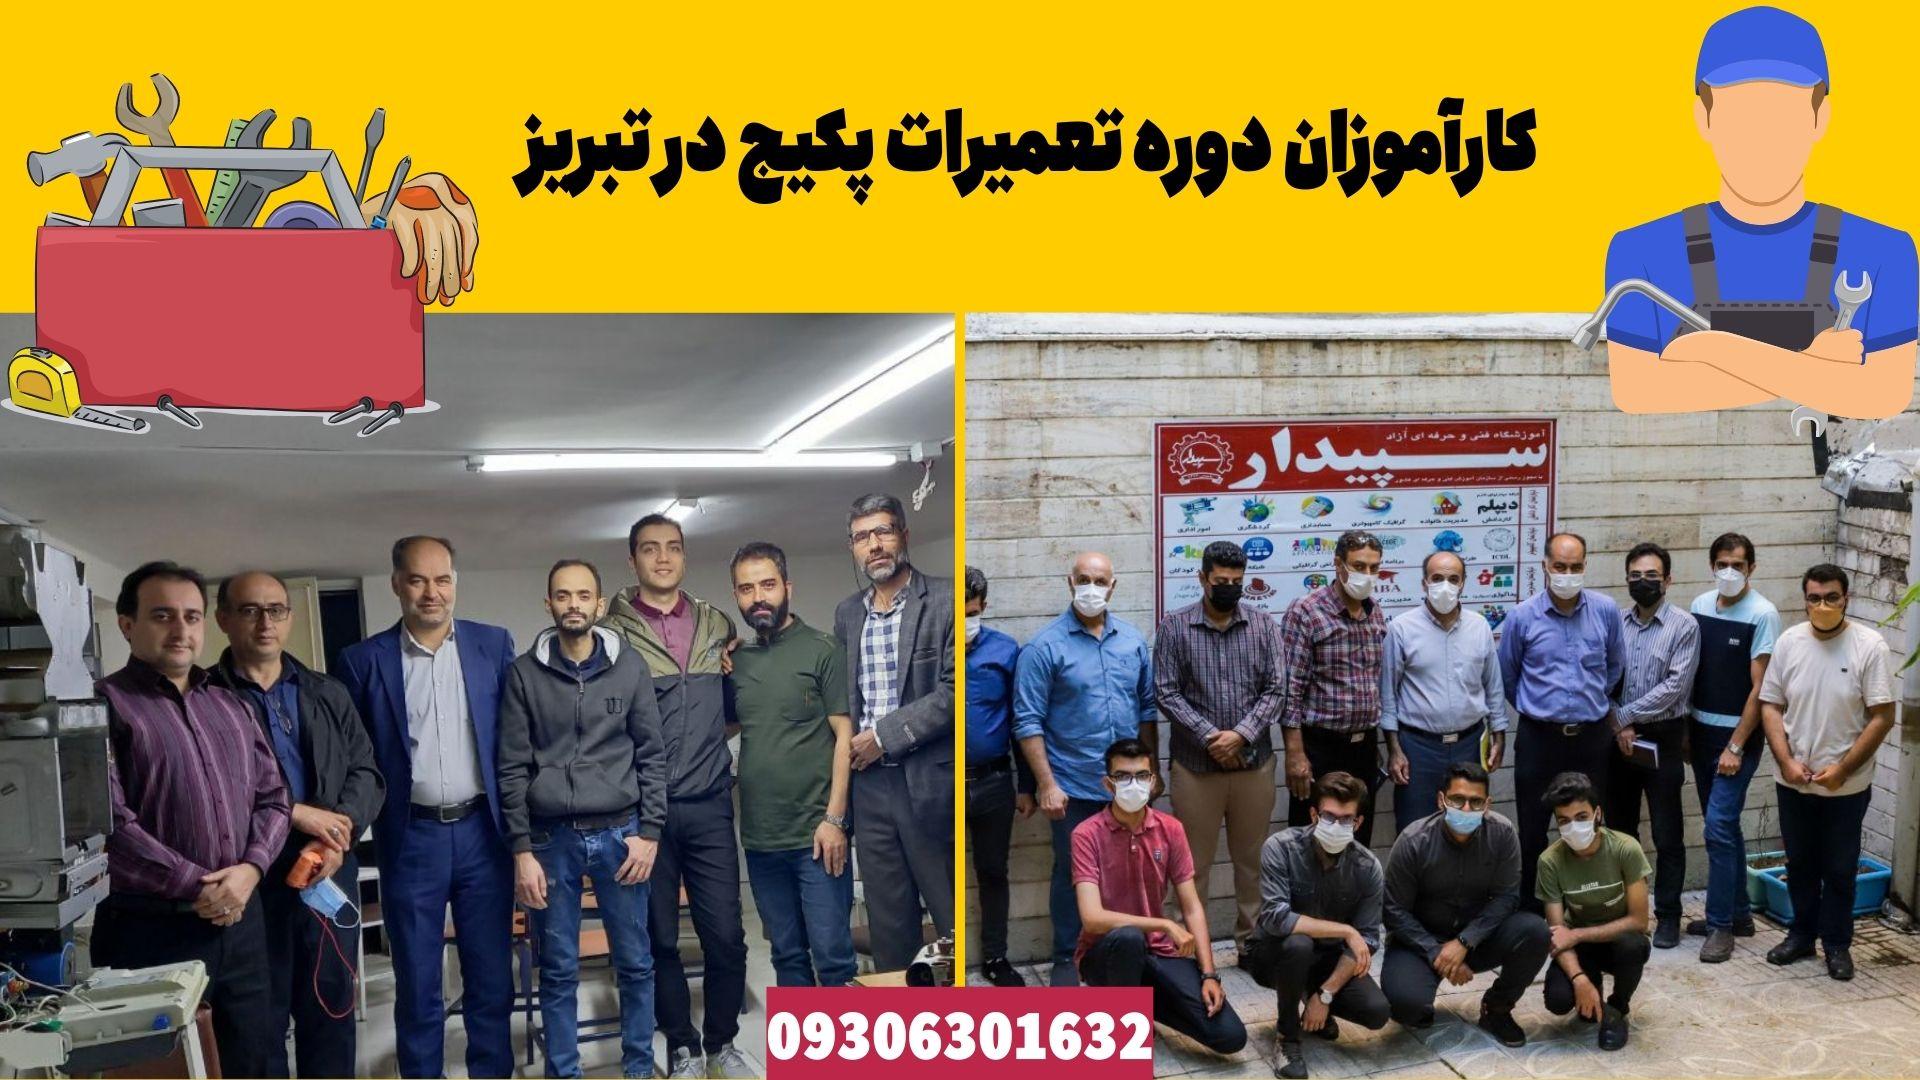 عکس کارآموزانی که در دوره تعمیرات پکیج در تبریز شرکت کرده بودند